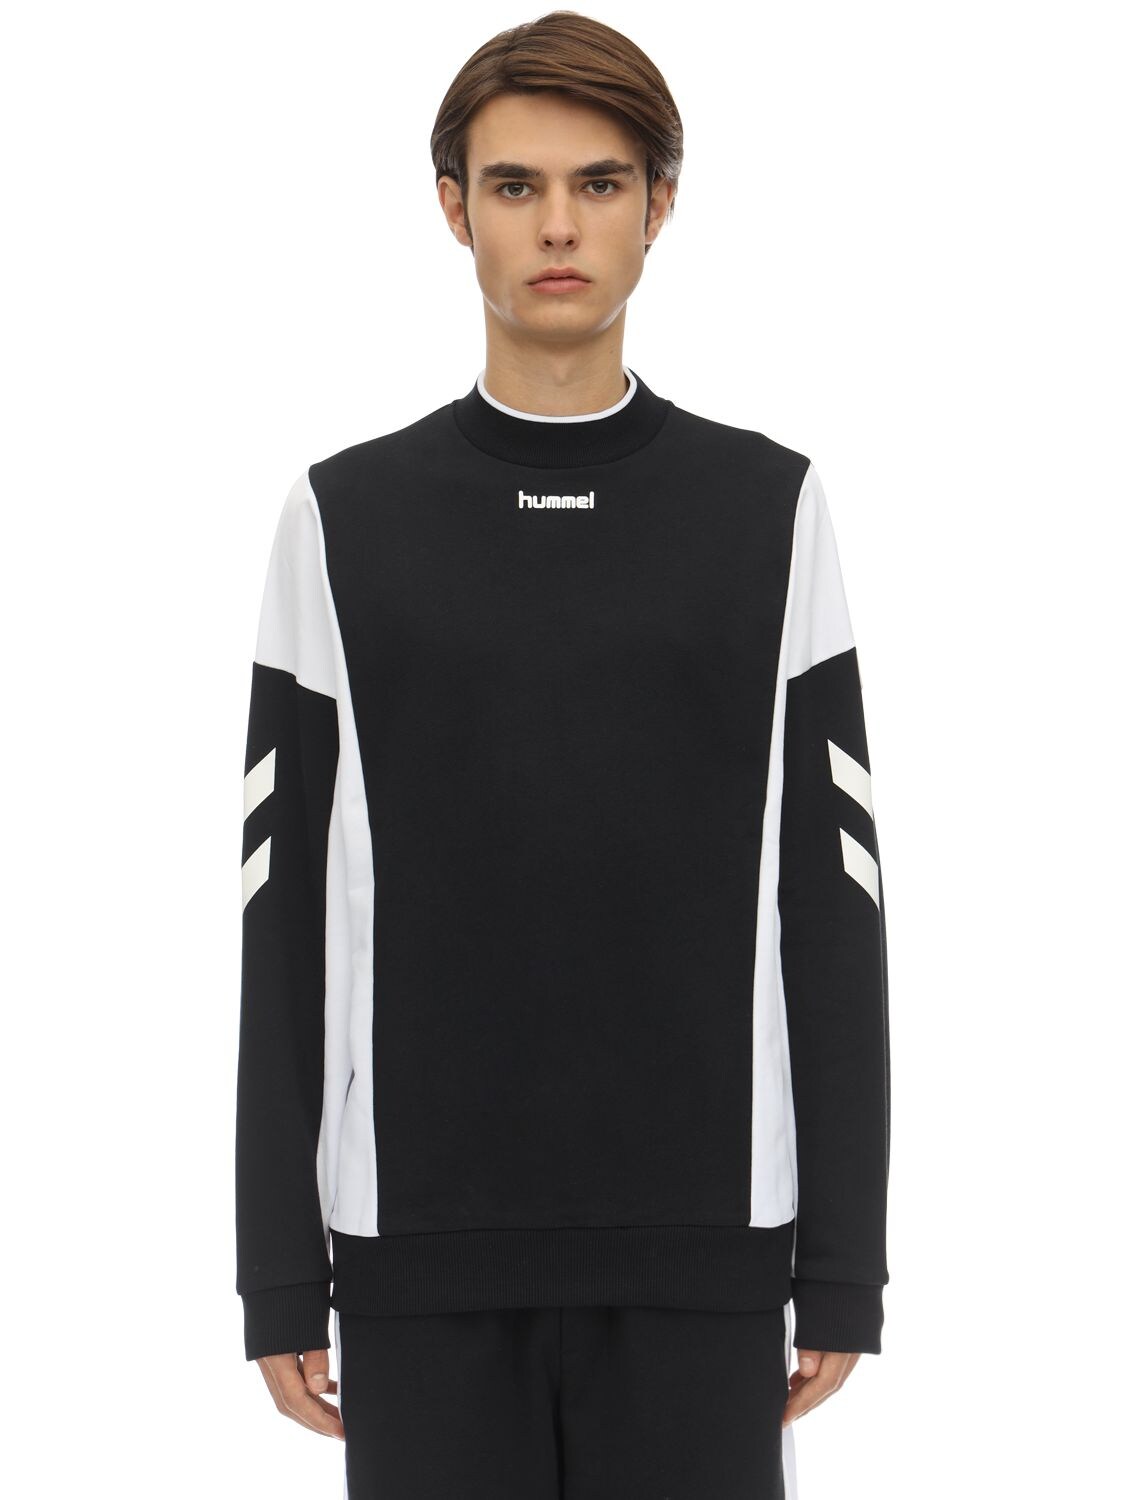 Hummel Claus Cotton Jersey Sweatshirt In Black,white